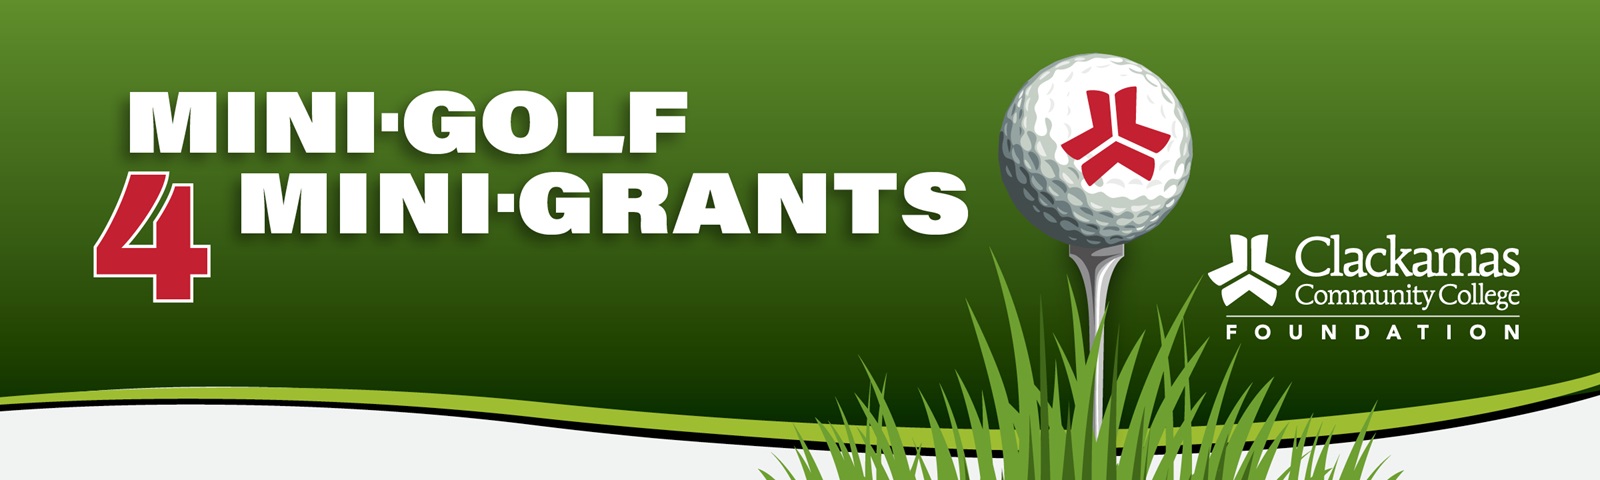 Mini-golf 4 mini-grants web banner